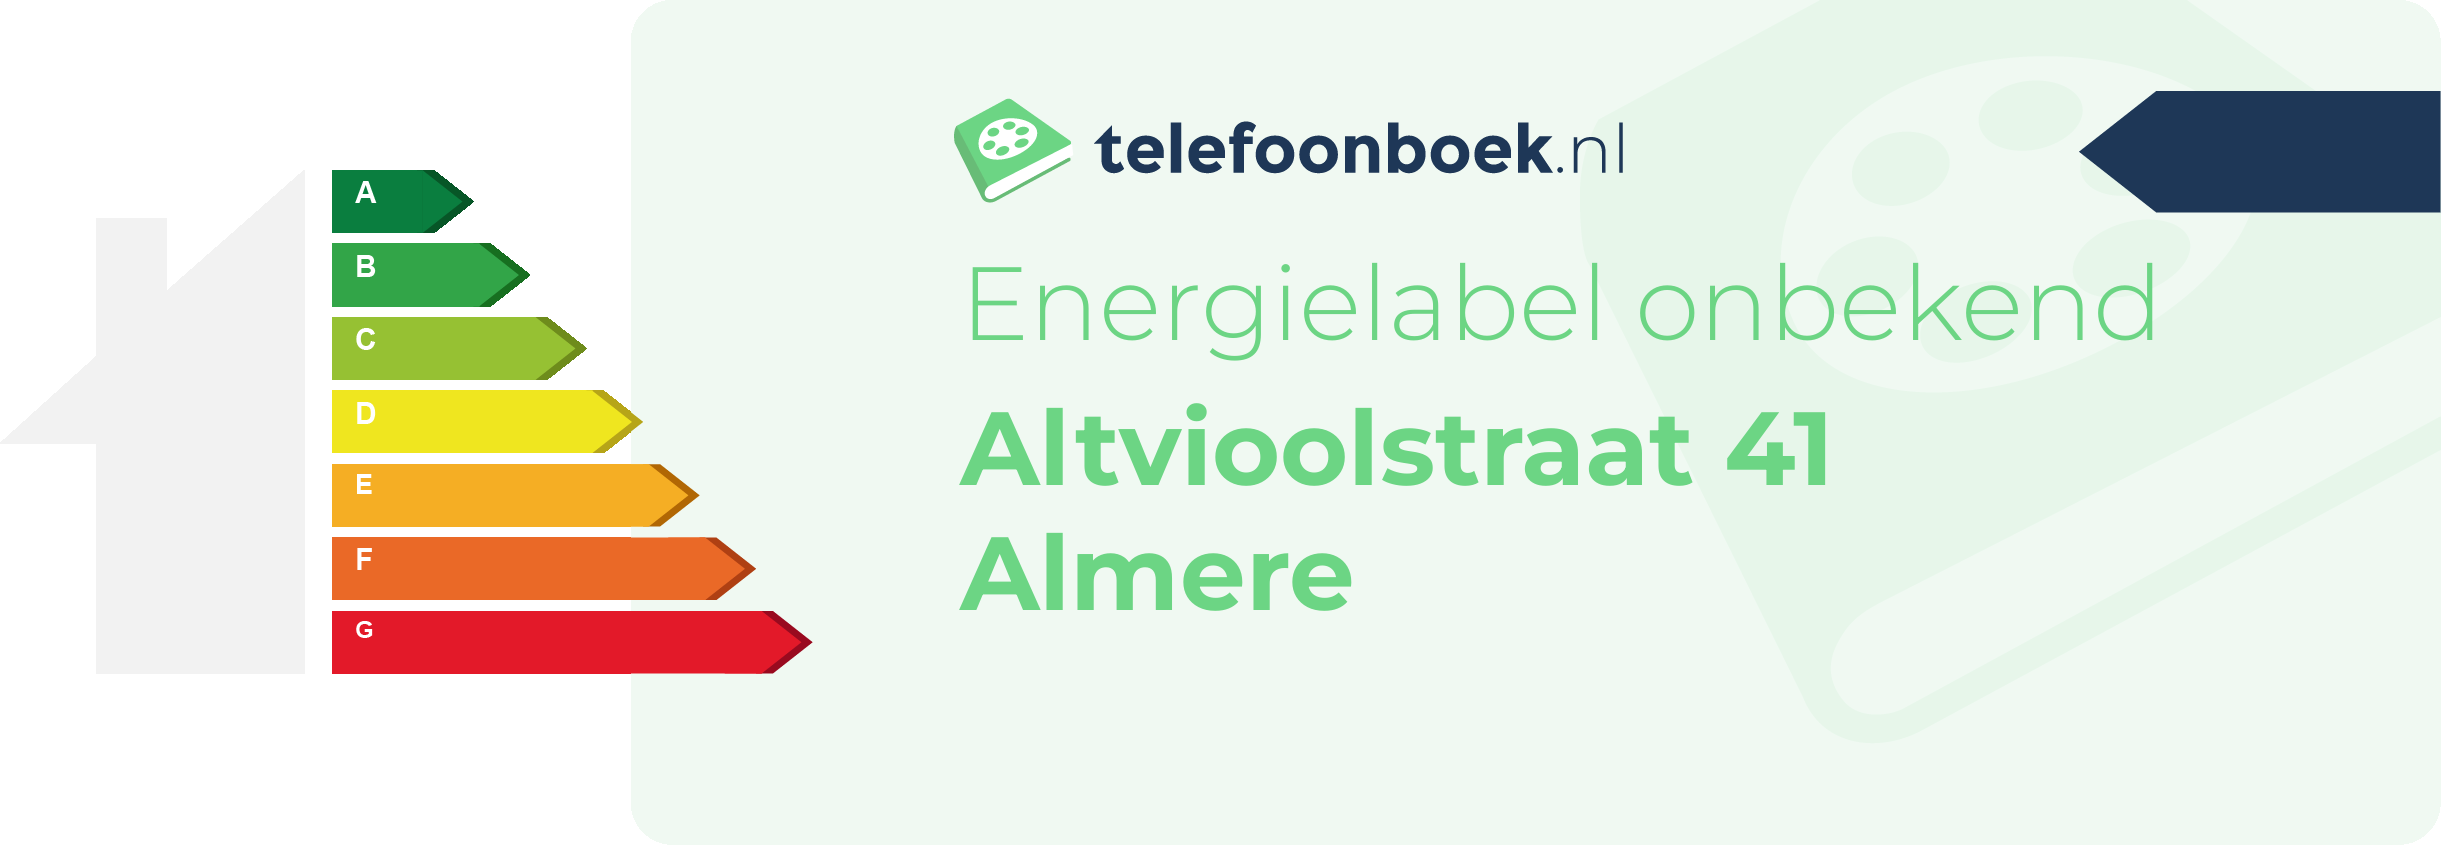 Energielabel Altvioolstraat 41 Almere